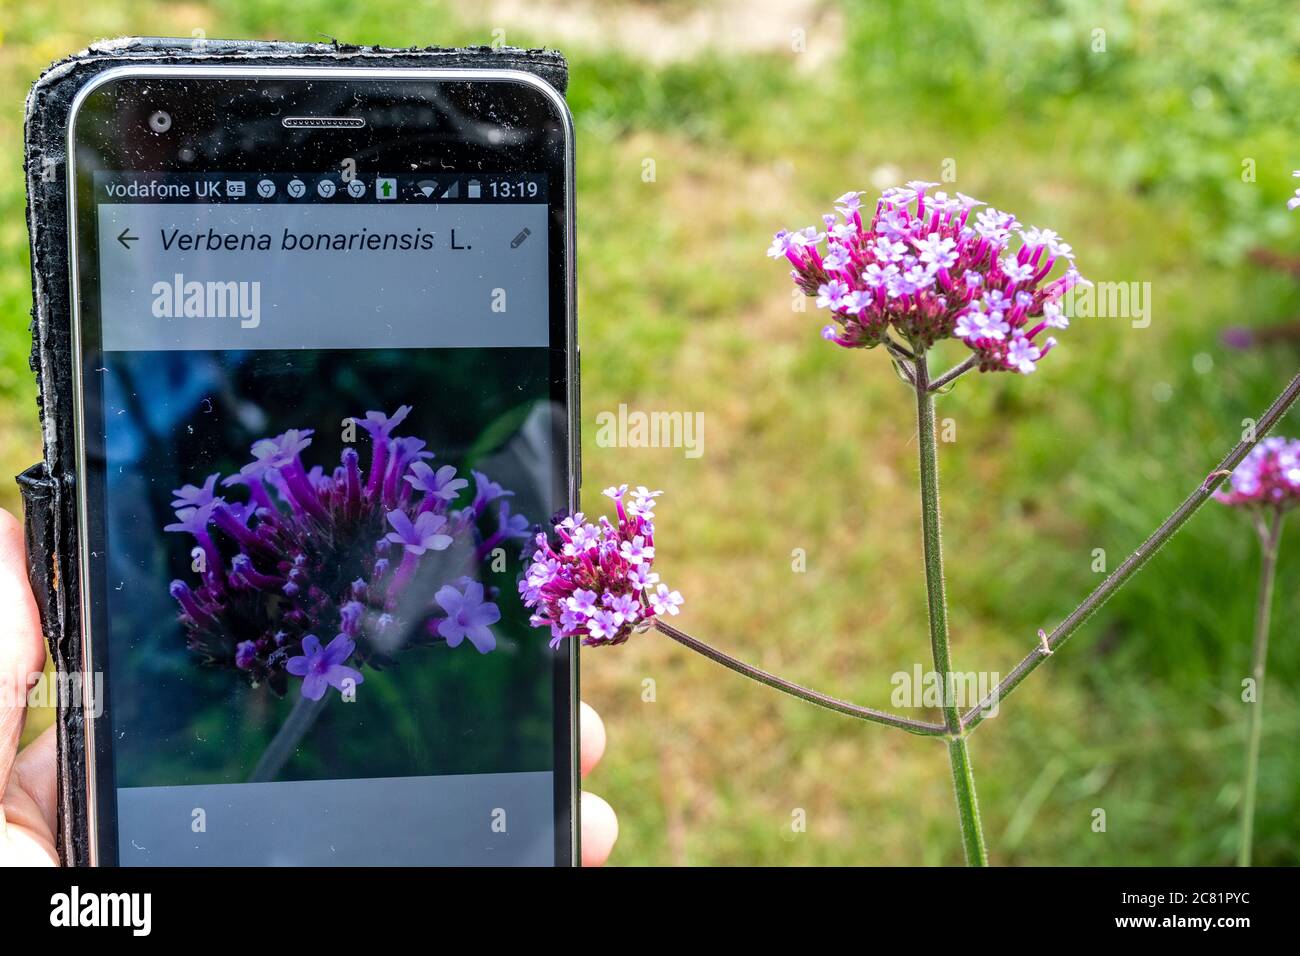 Plantnet App auf einem Handy zur Identifizierung oder ID von Pflanzen (Flora), neben Verbena bonariensis Blumen Stockfoto